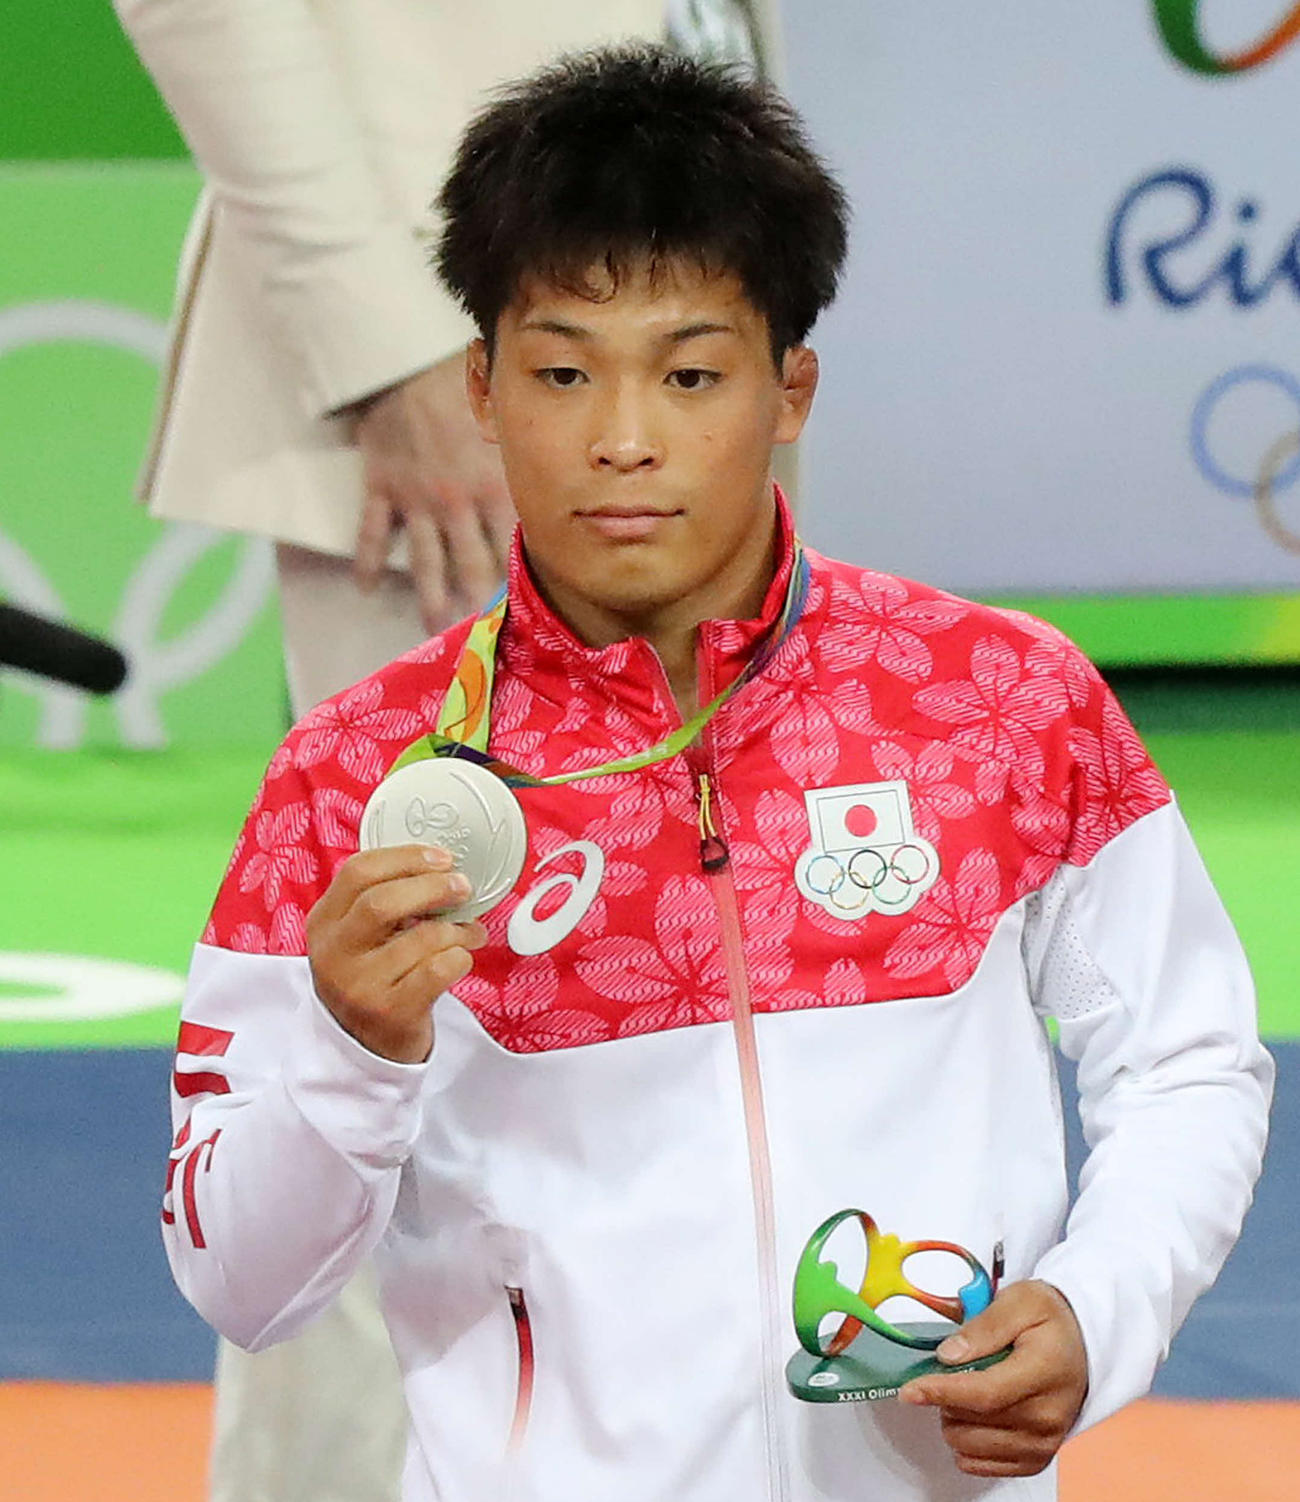 16年8月14日、リオデジャネイロ五輪レスリング男子グレコローマンスタイル59キロ級で銀メダルを獲得した太田忍